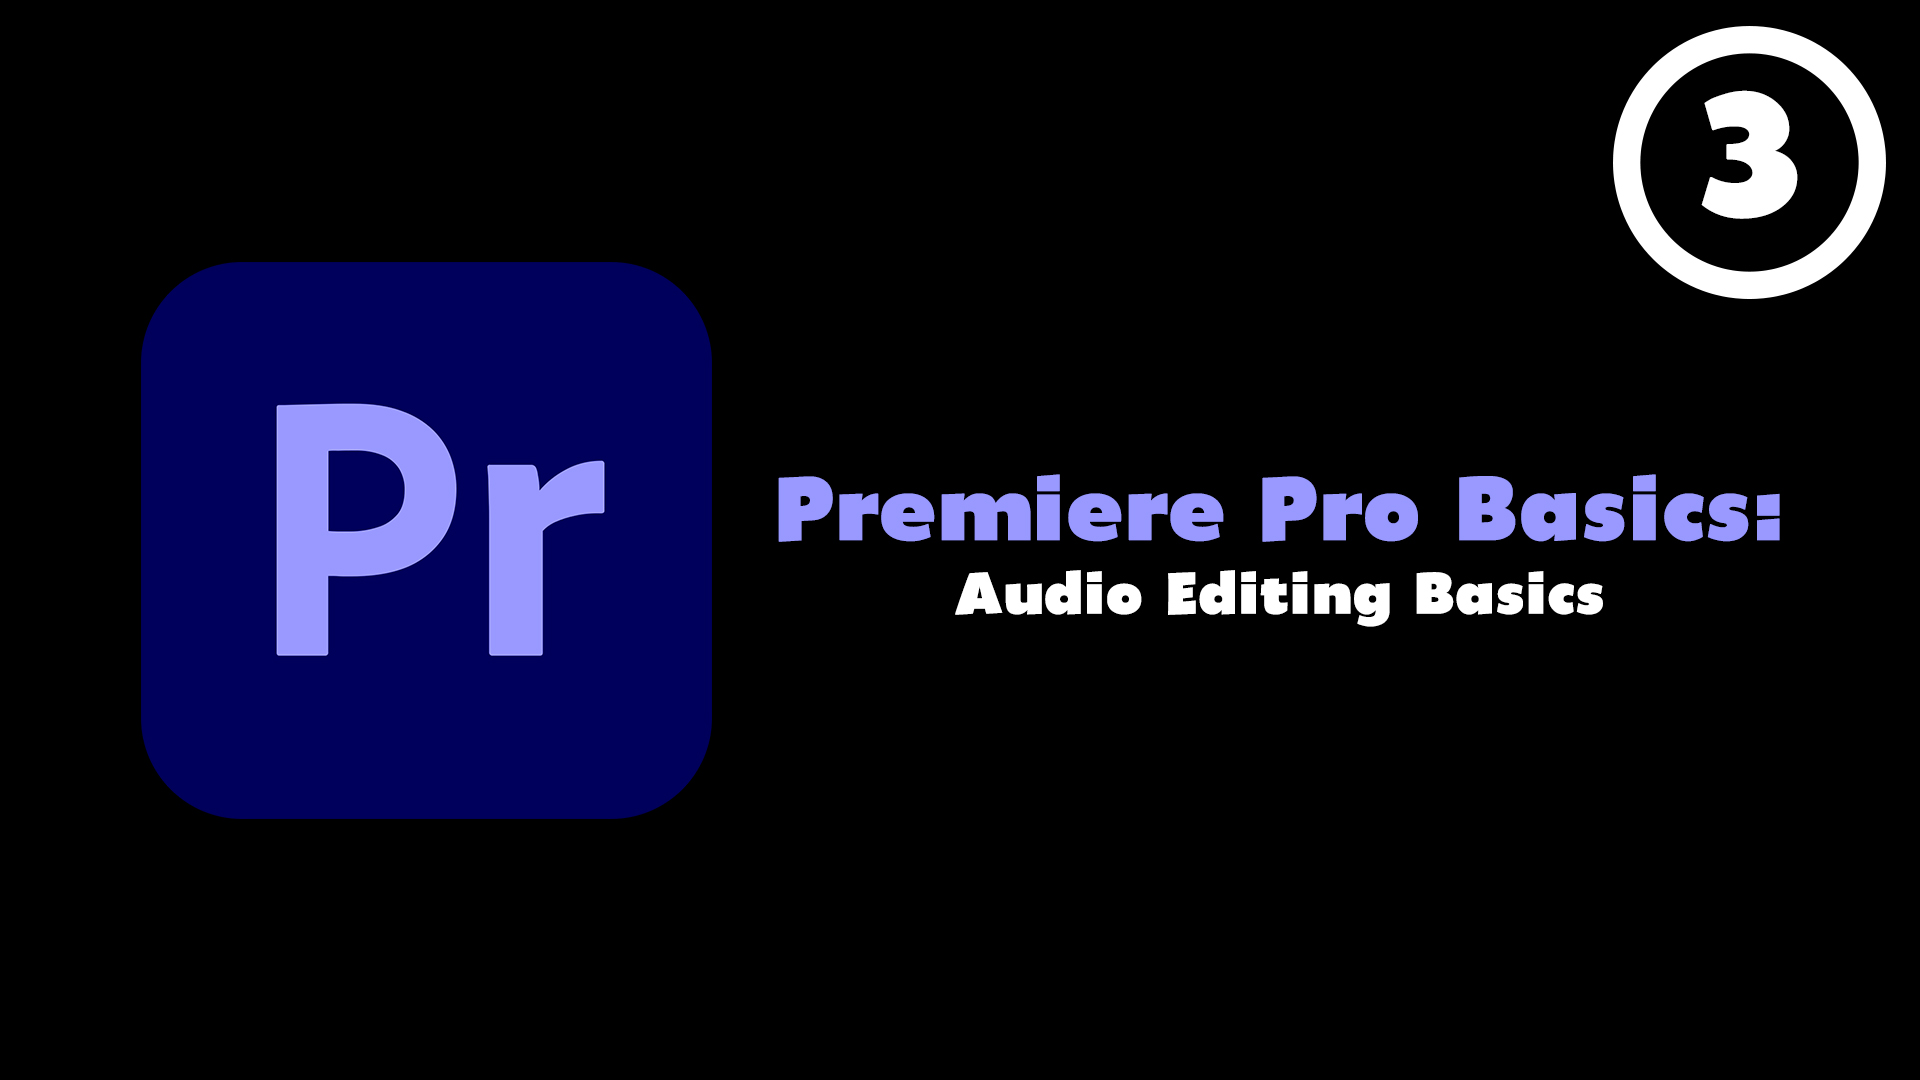 Premiere Pro Basics Course (Episode 3) - Audio Editing Basics